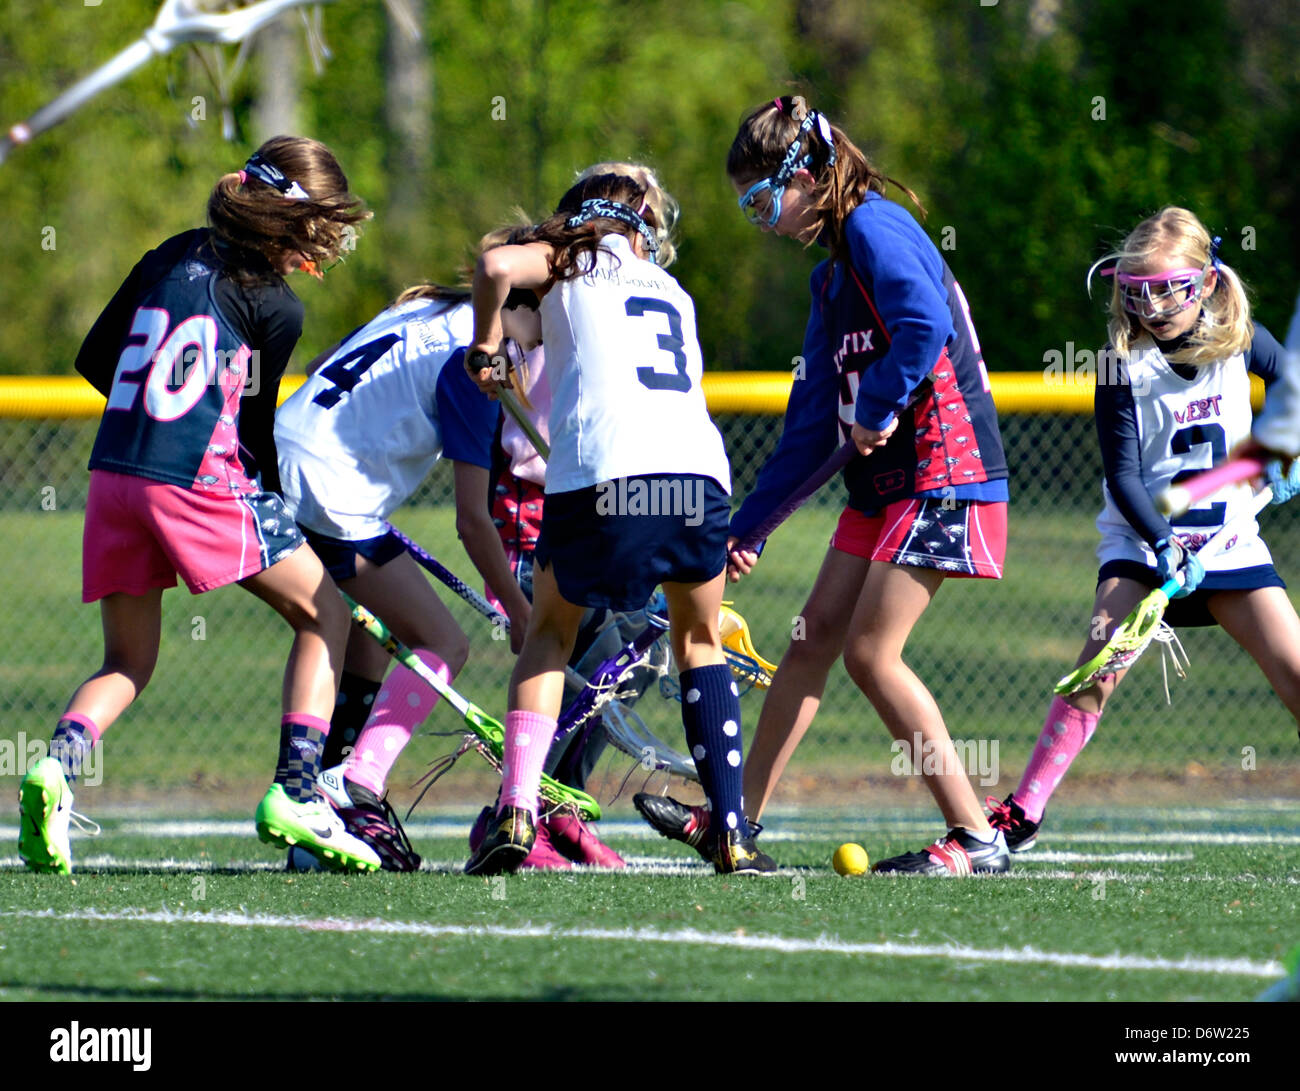 Zwei Teams von jungen Mädchen kämpfen um den Ball während des Spiels Lacrosse. Stockfoto